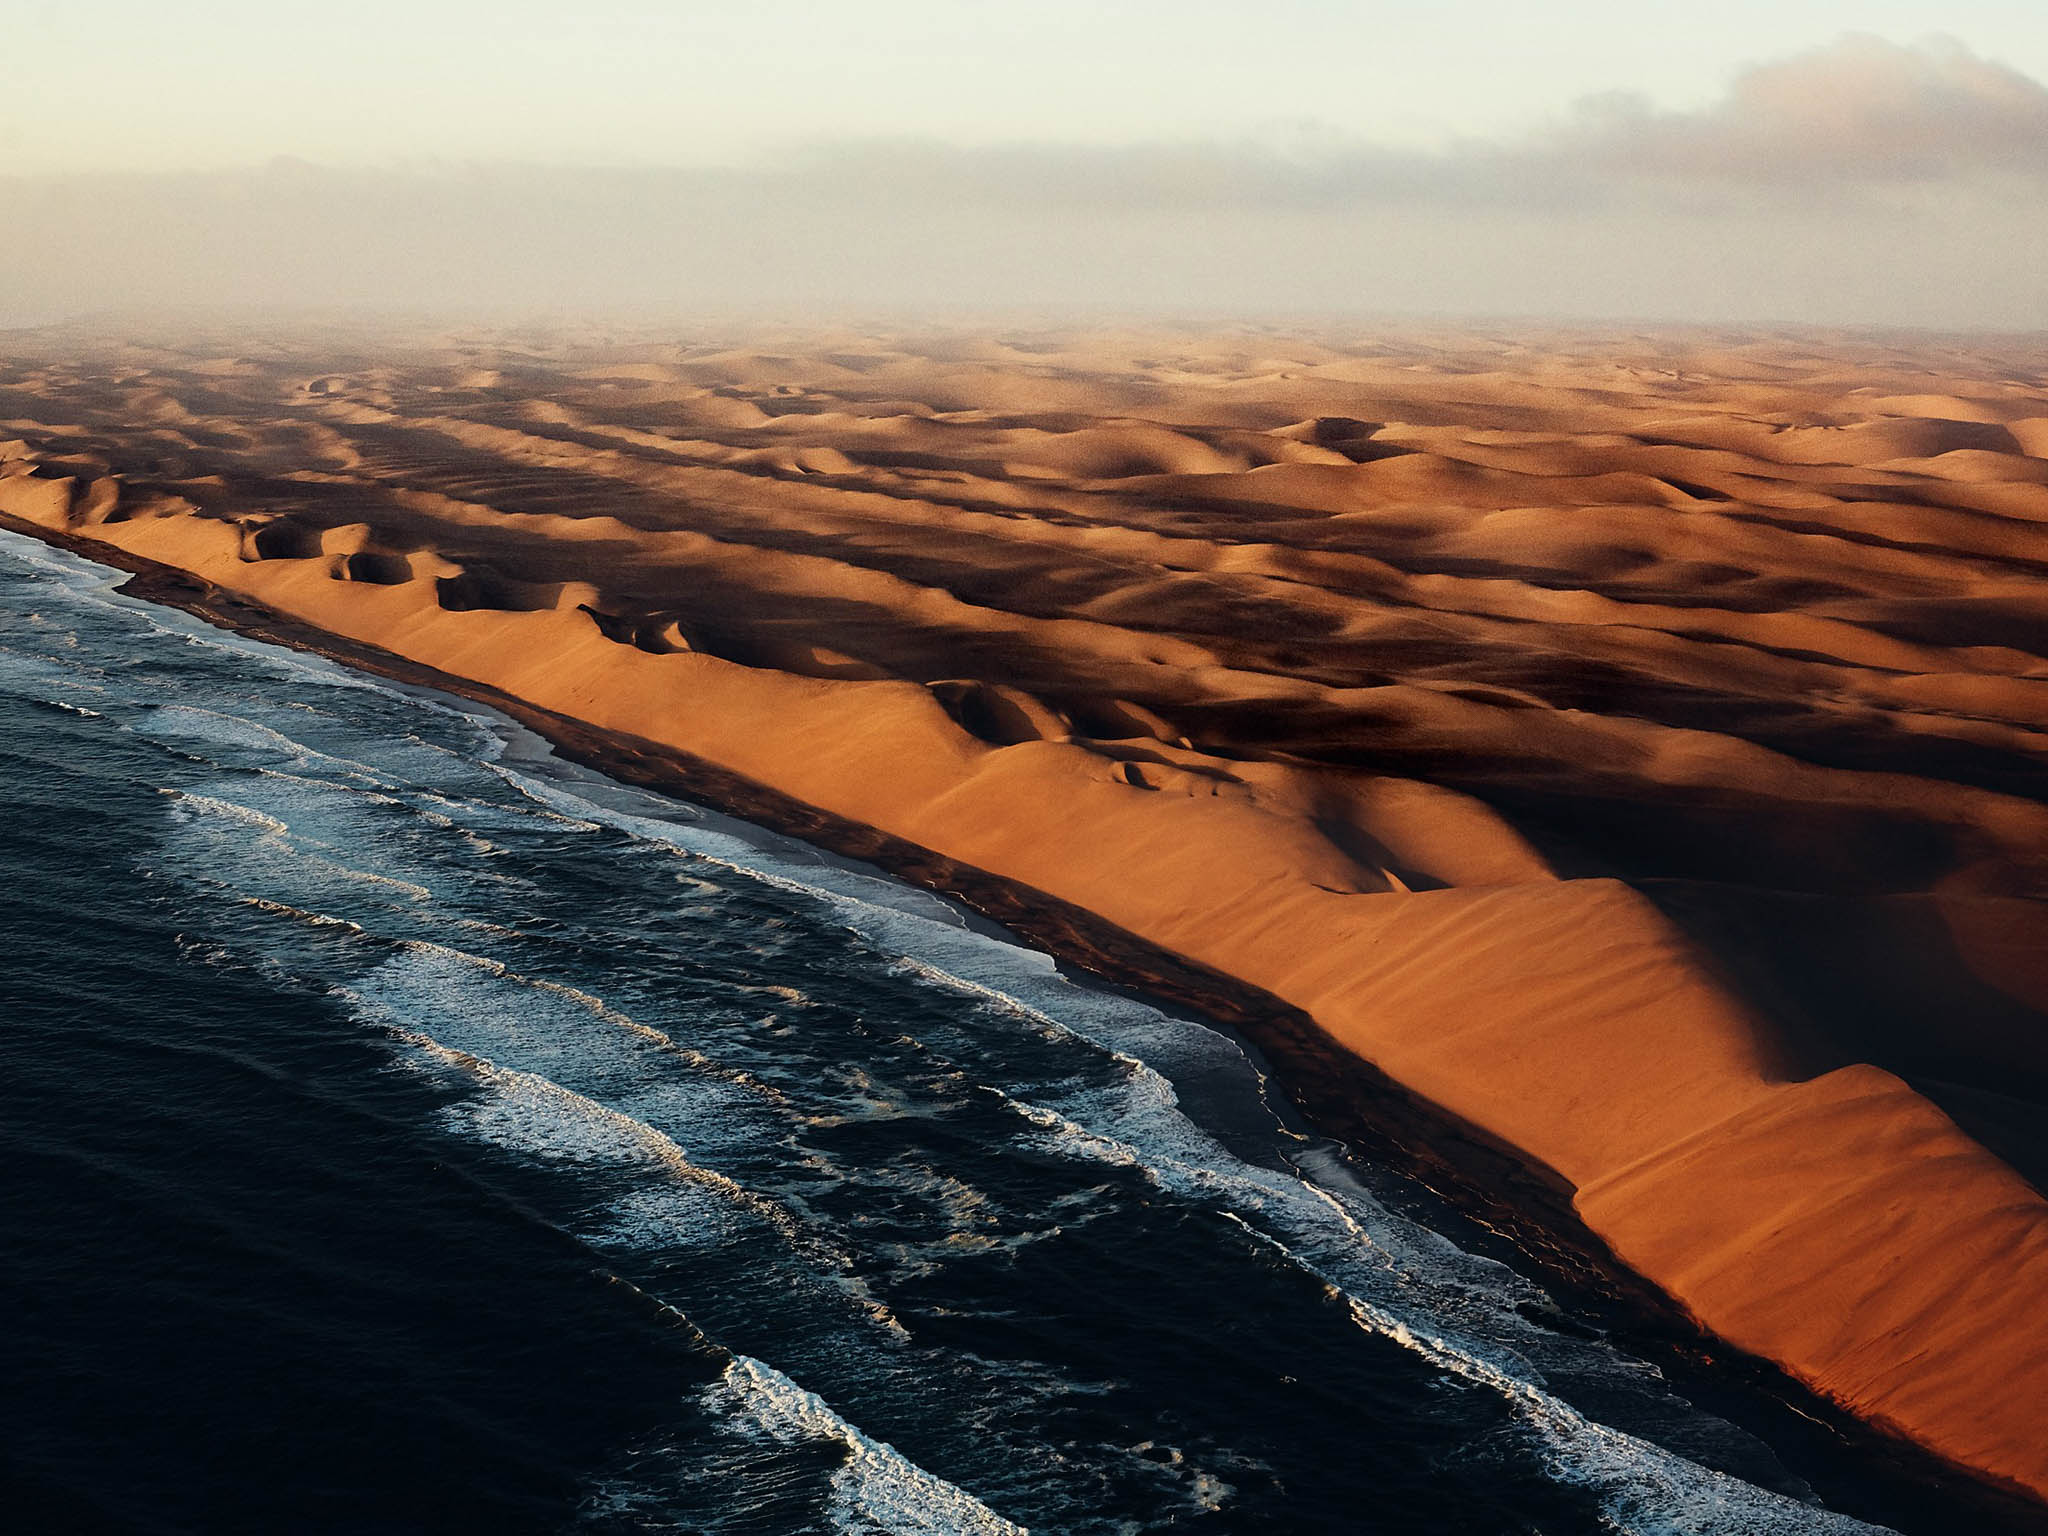 沙漠与海洋julianwalter拍摄于非洲西南部纳米布沙漠